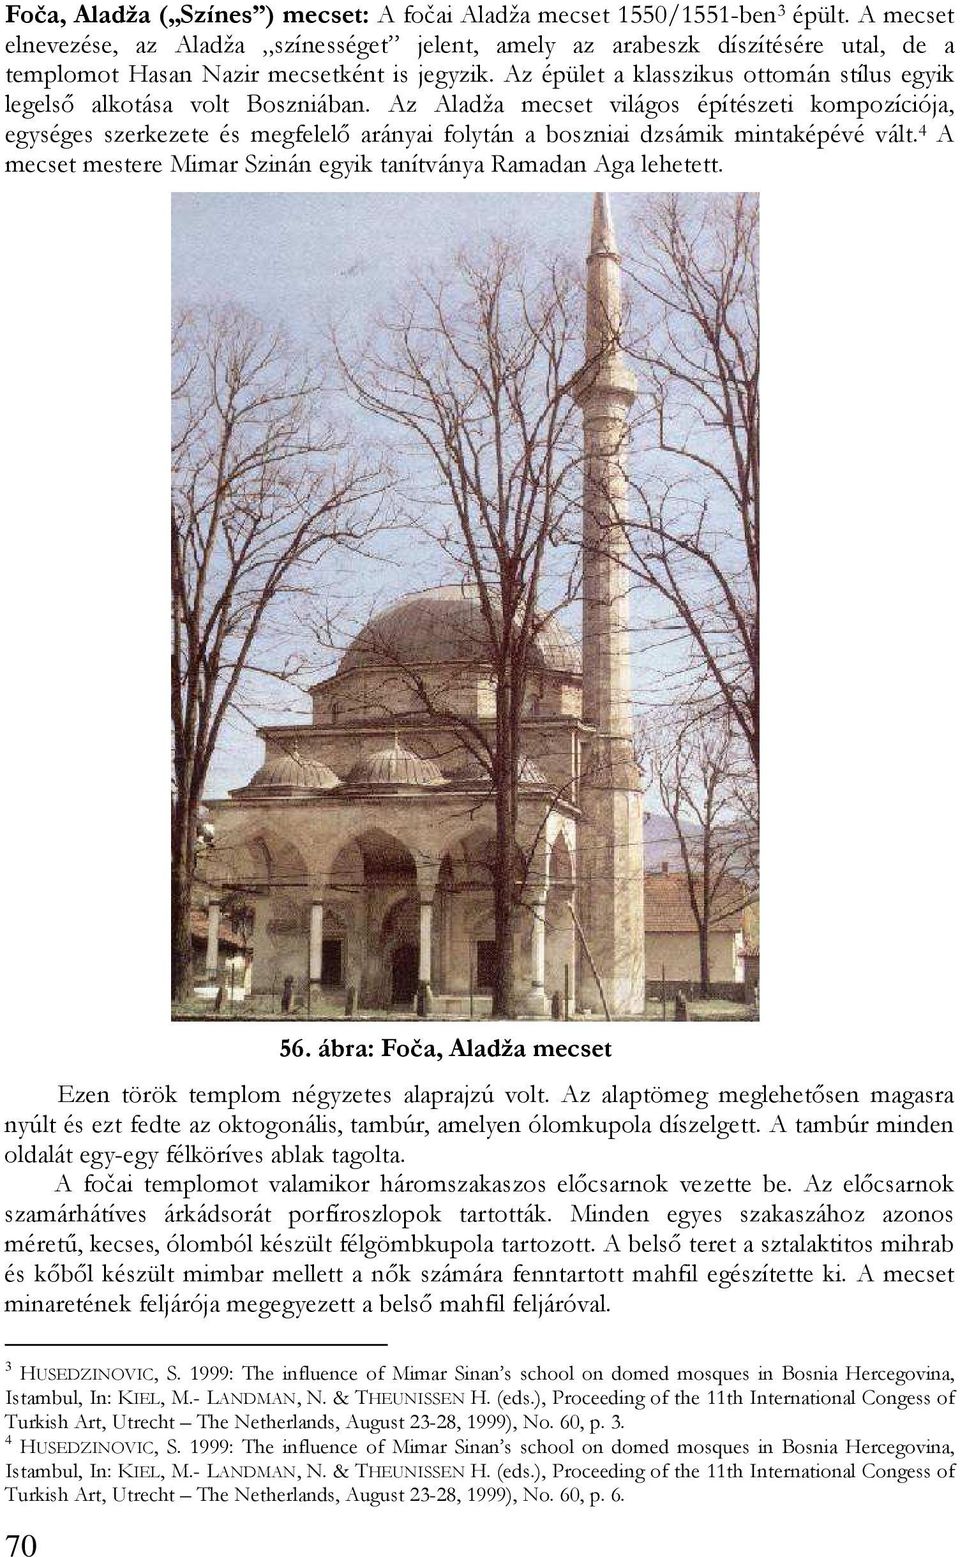 Az épület a klasszikus ottomán stílus egyik legelsı alkotása volt Boszniában.